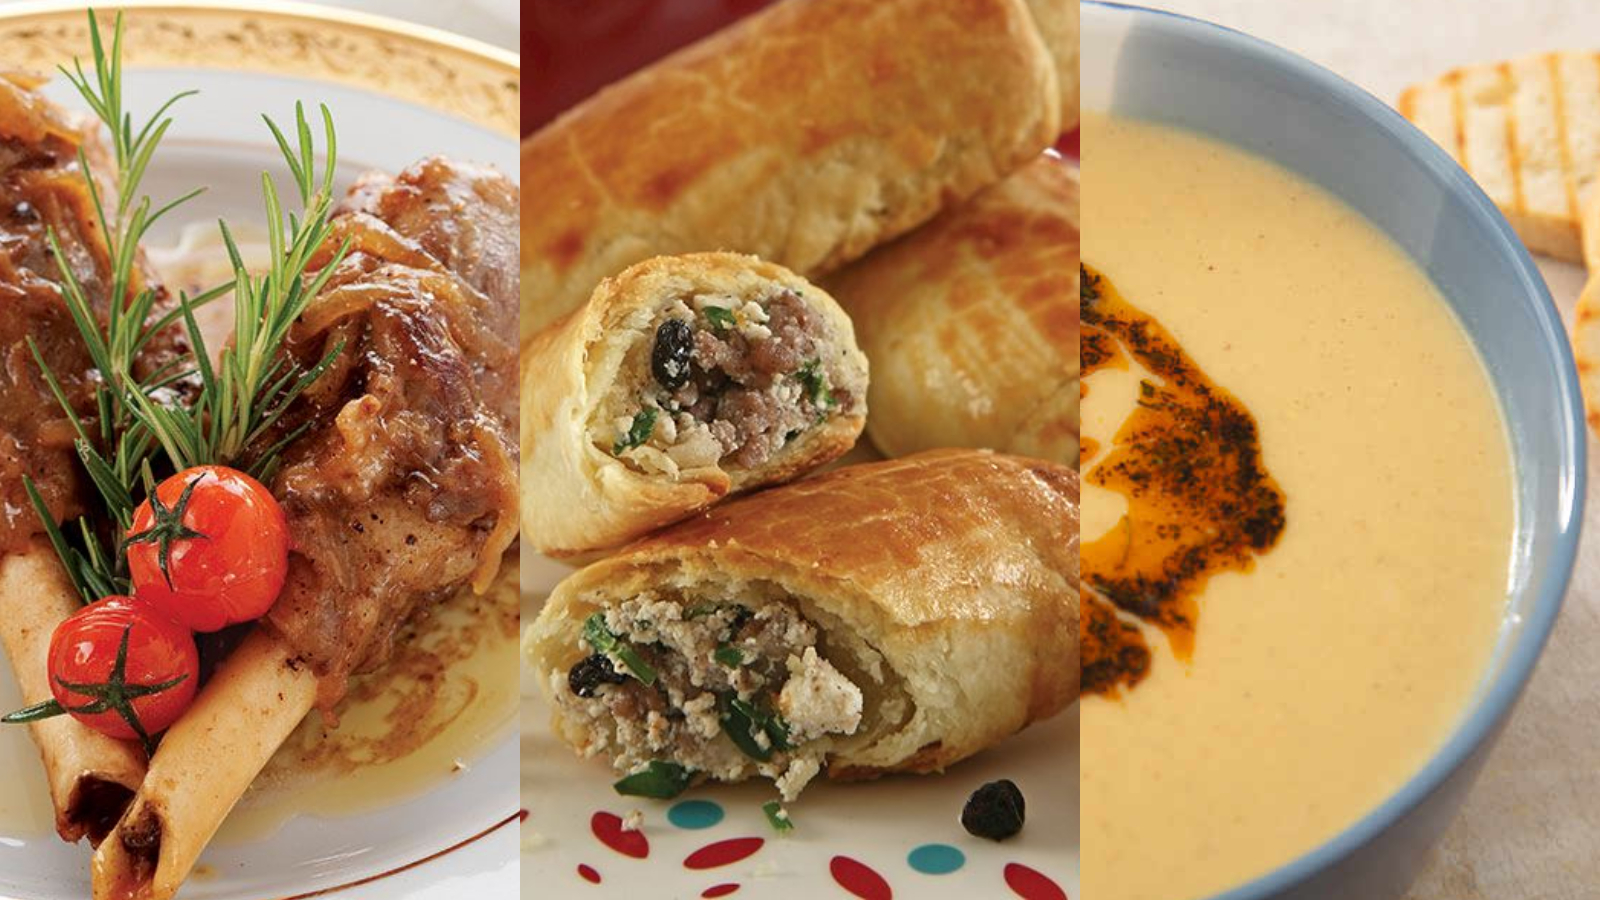 İftara ne pişirsem? Osmanlı mutfağının geleneksel lezzetleri Çeşm-i Nigar çorbası, tuffahiye tarifi nasıl yapılır? (2. gün)